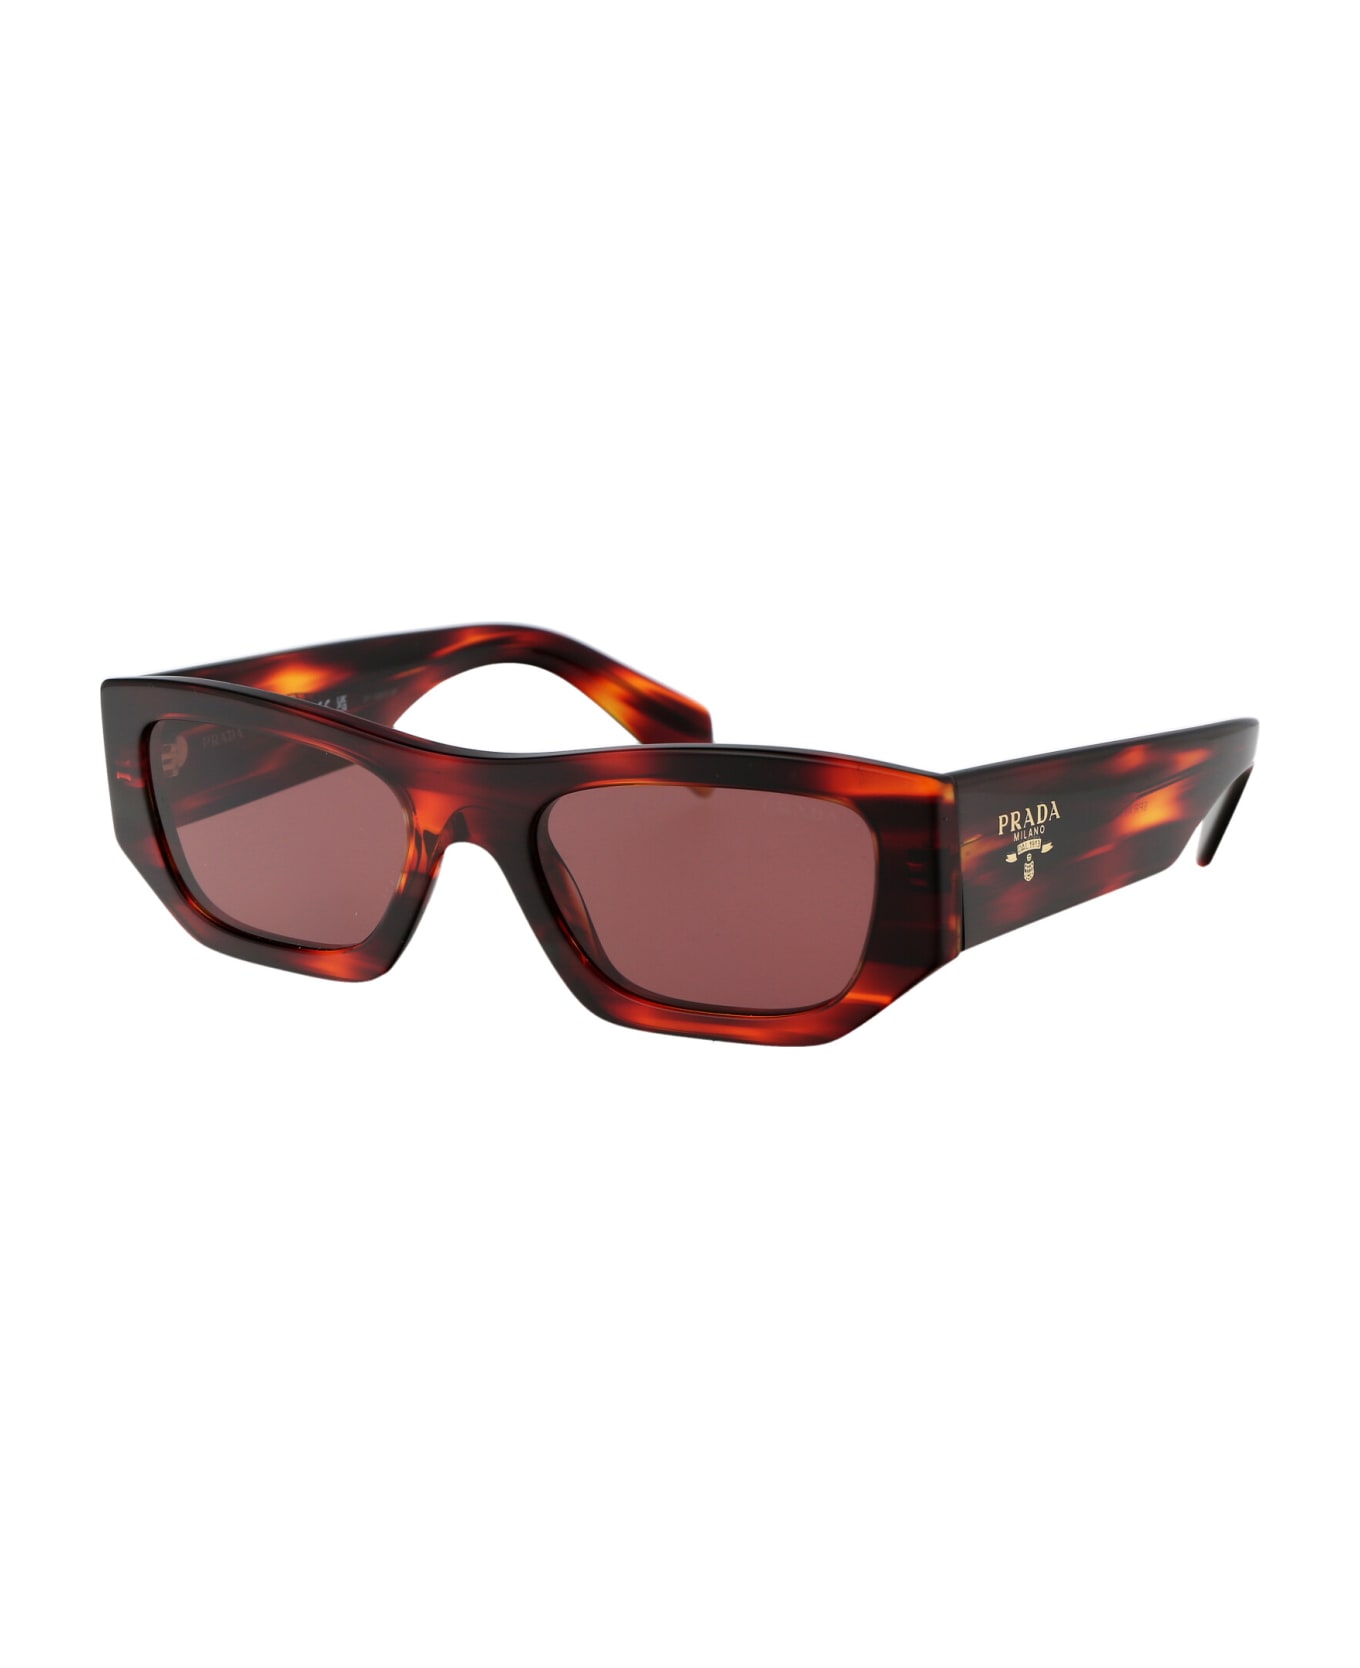 Prada Eyewear 0pr A01s Sunglasses - 13O80B Havana Red